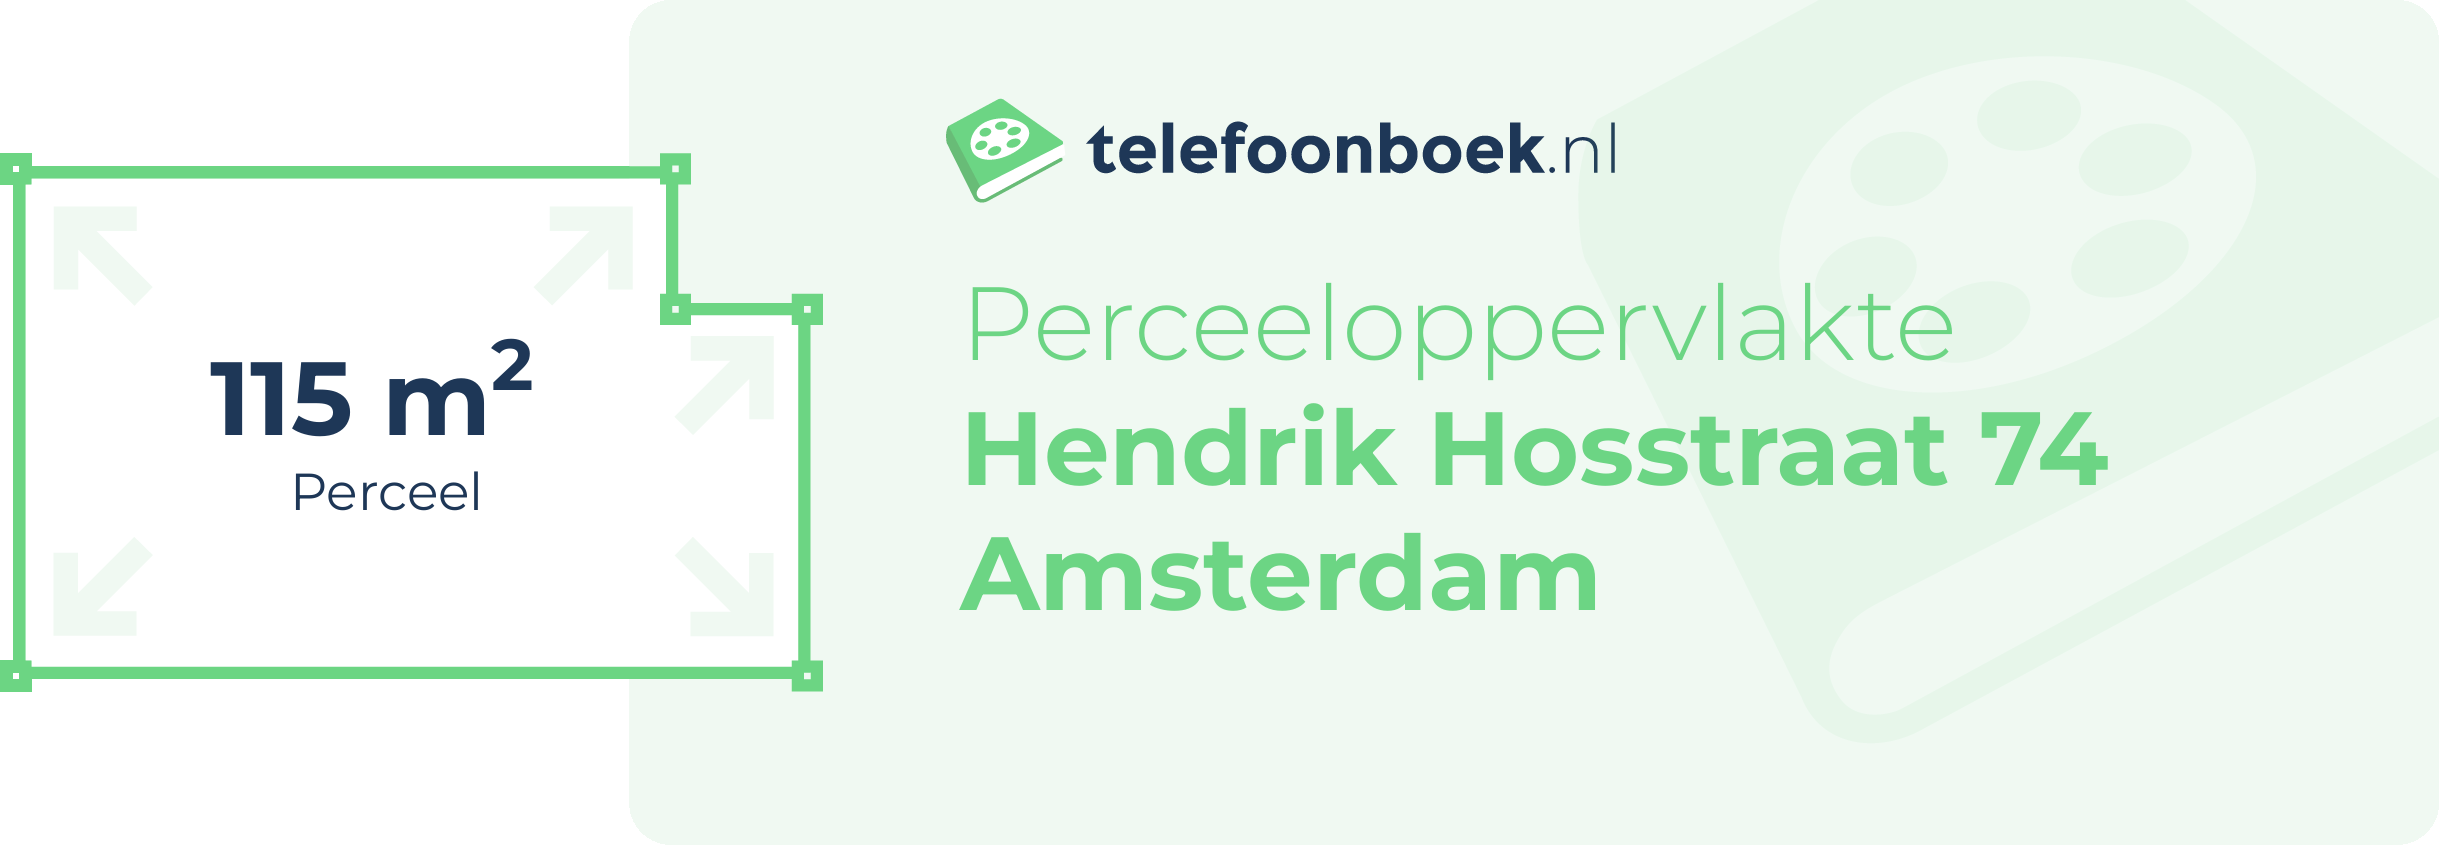 Perceeloppervlakte Hendrik Hosstraat 74 Amsterdam